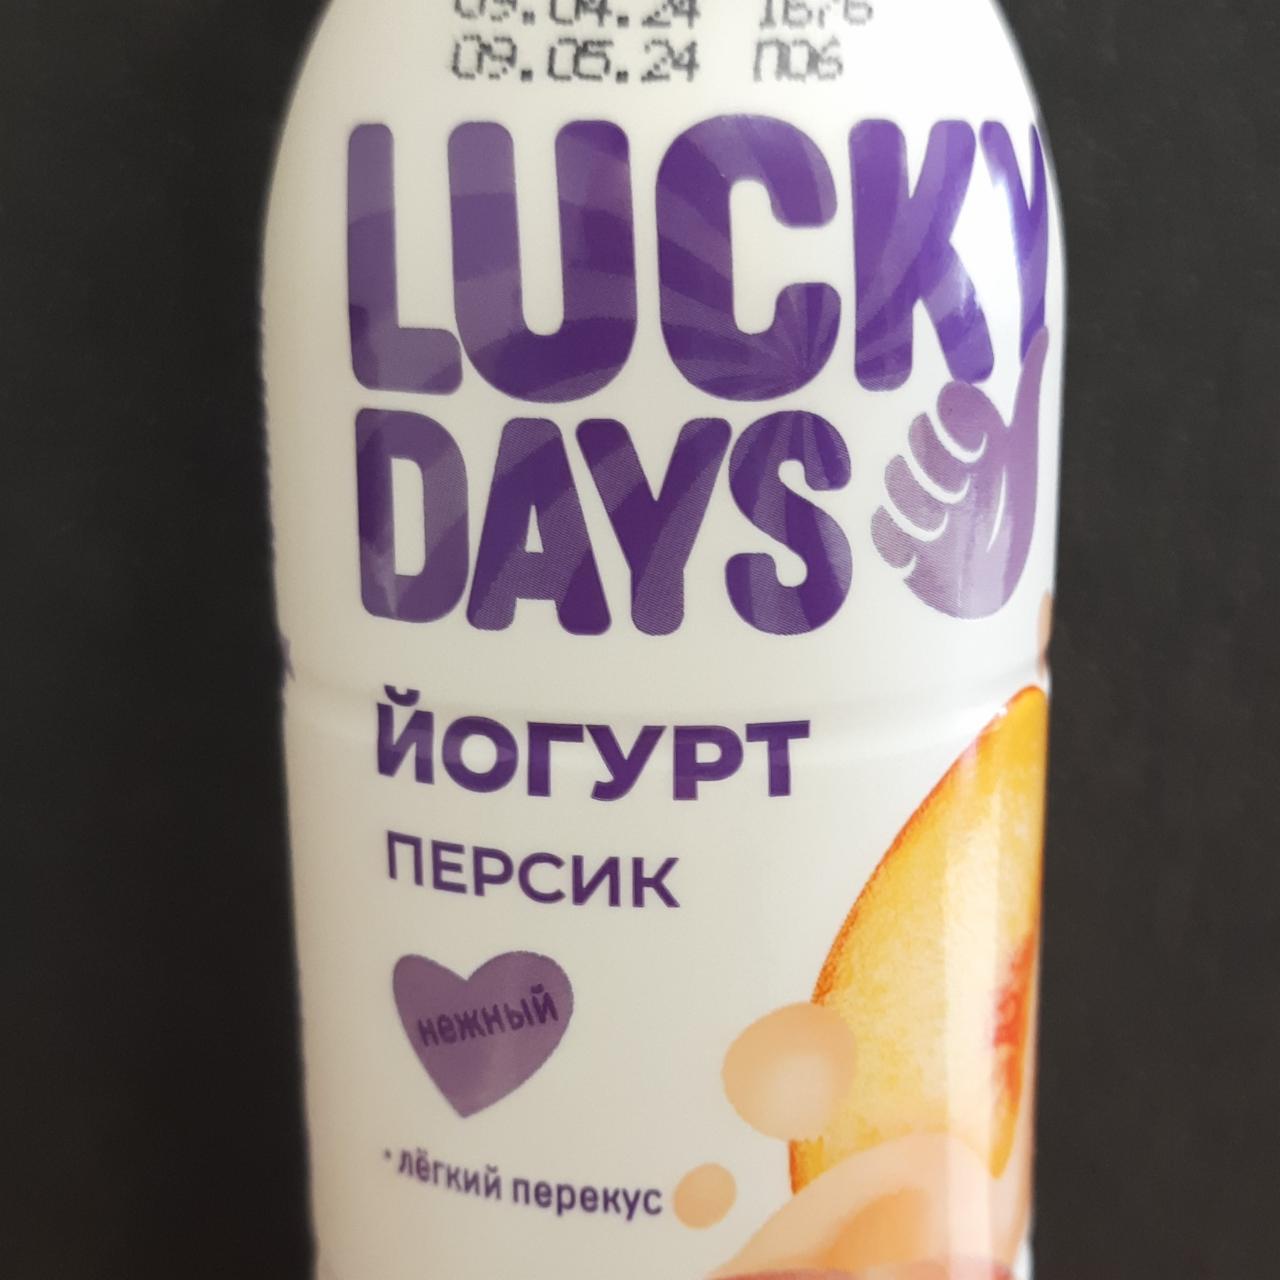 Фото - Йогурт питьевой персик нежный Lucky days